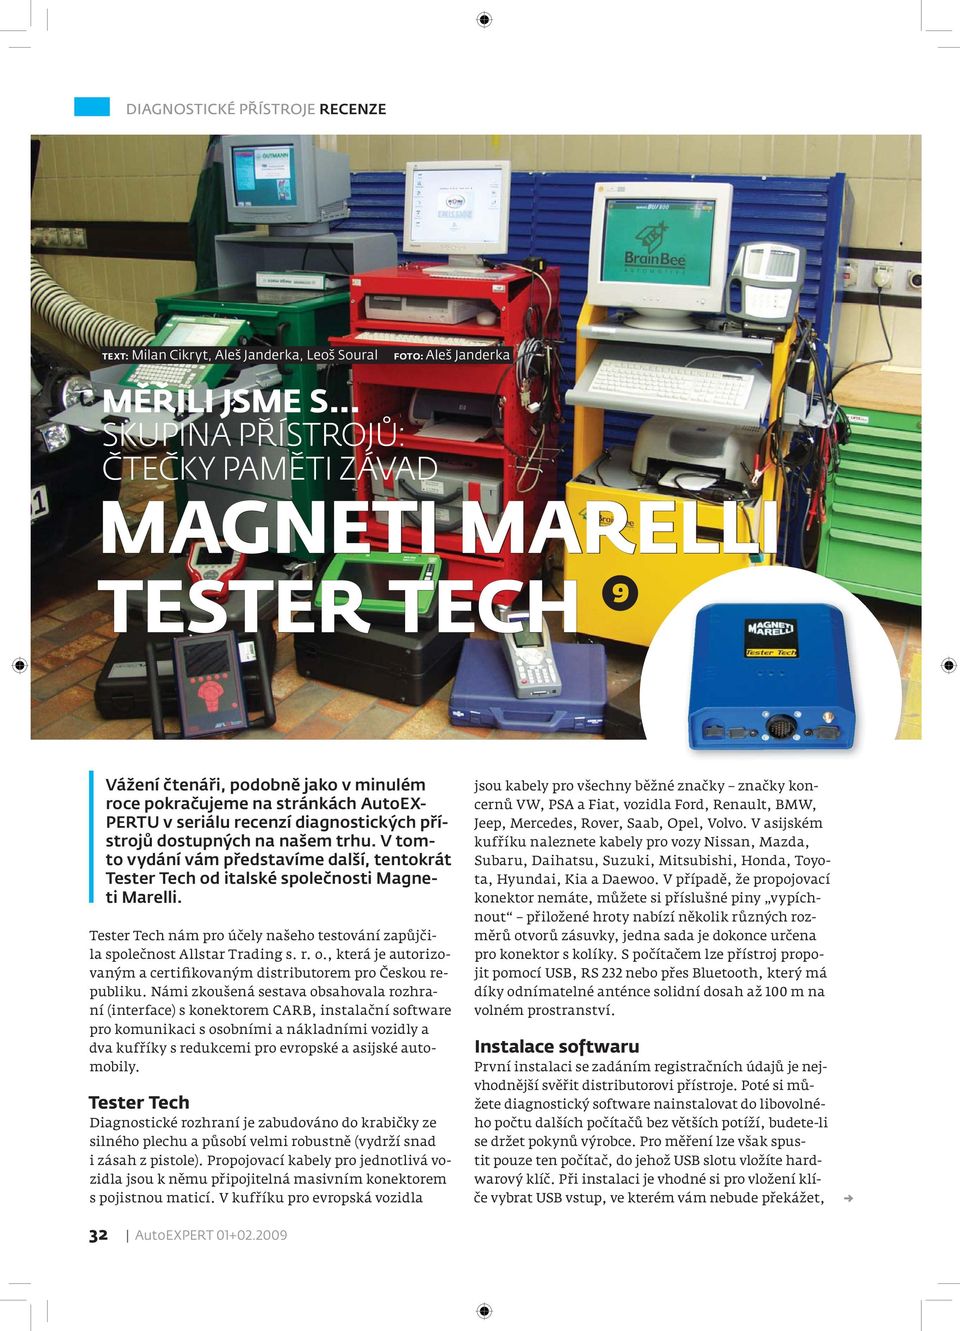 dostupných na našem trhu. V tomto vydání vám představíme další, tentokrát Tester Tech od italské společnosti Magneti Marelli.